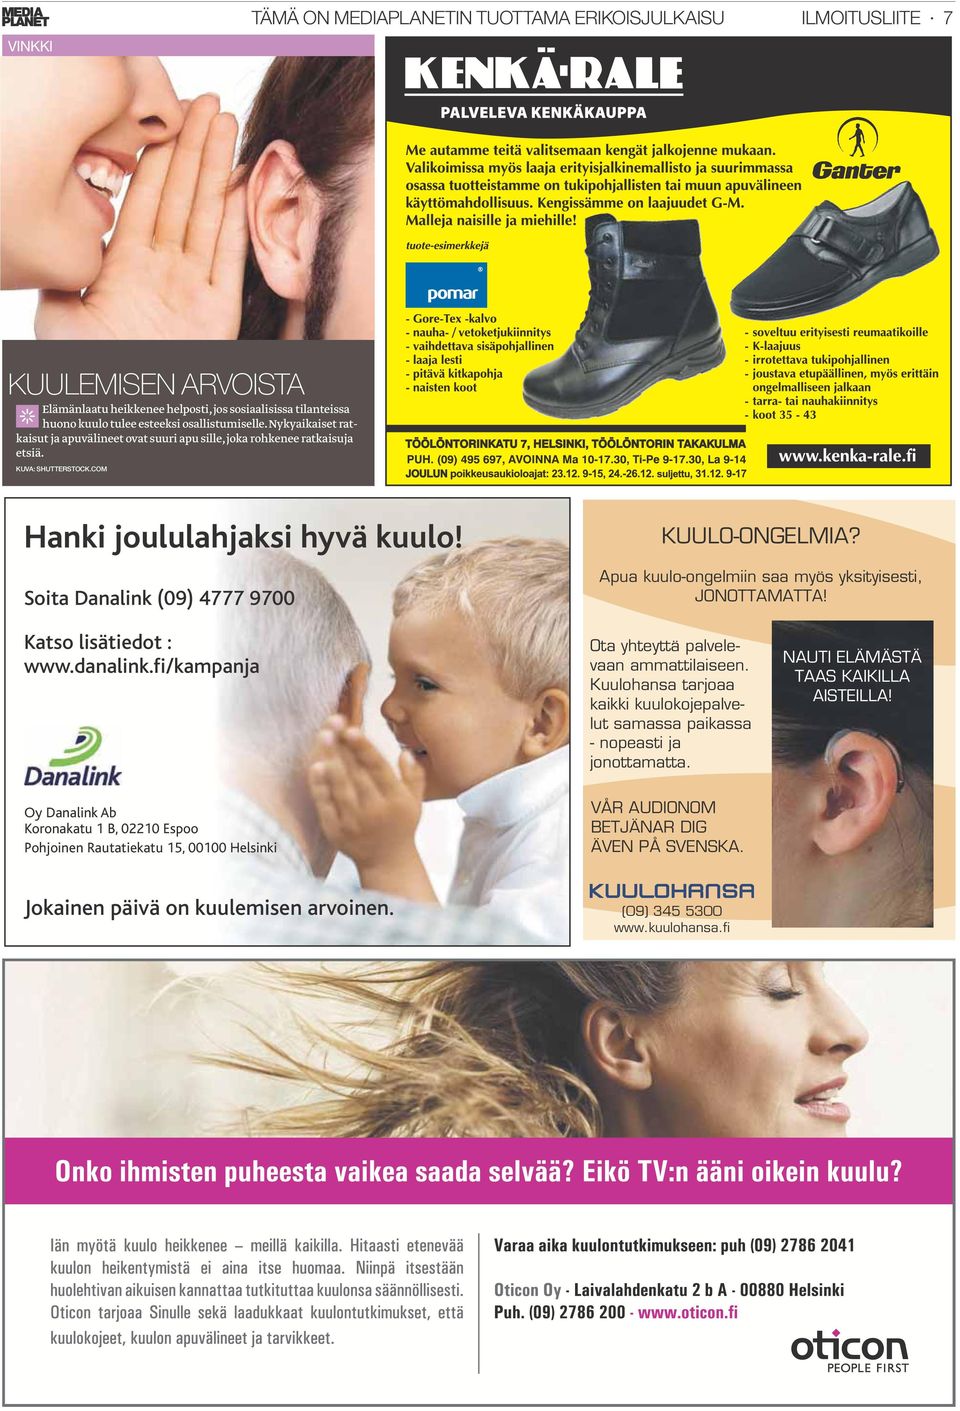 Apua kuulo-ongelmiin saa myös yksityisesti, JONOTTAMATTA! Katso lisätiedot : www.danalink.fi/kampanja Ota yhteyttä palvelevaan ammattilaiseen.